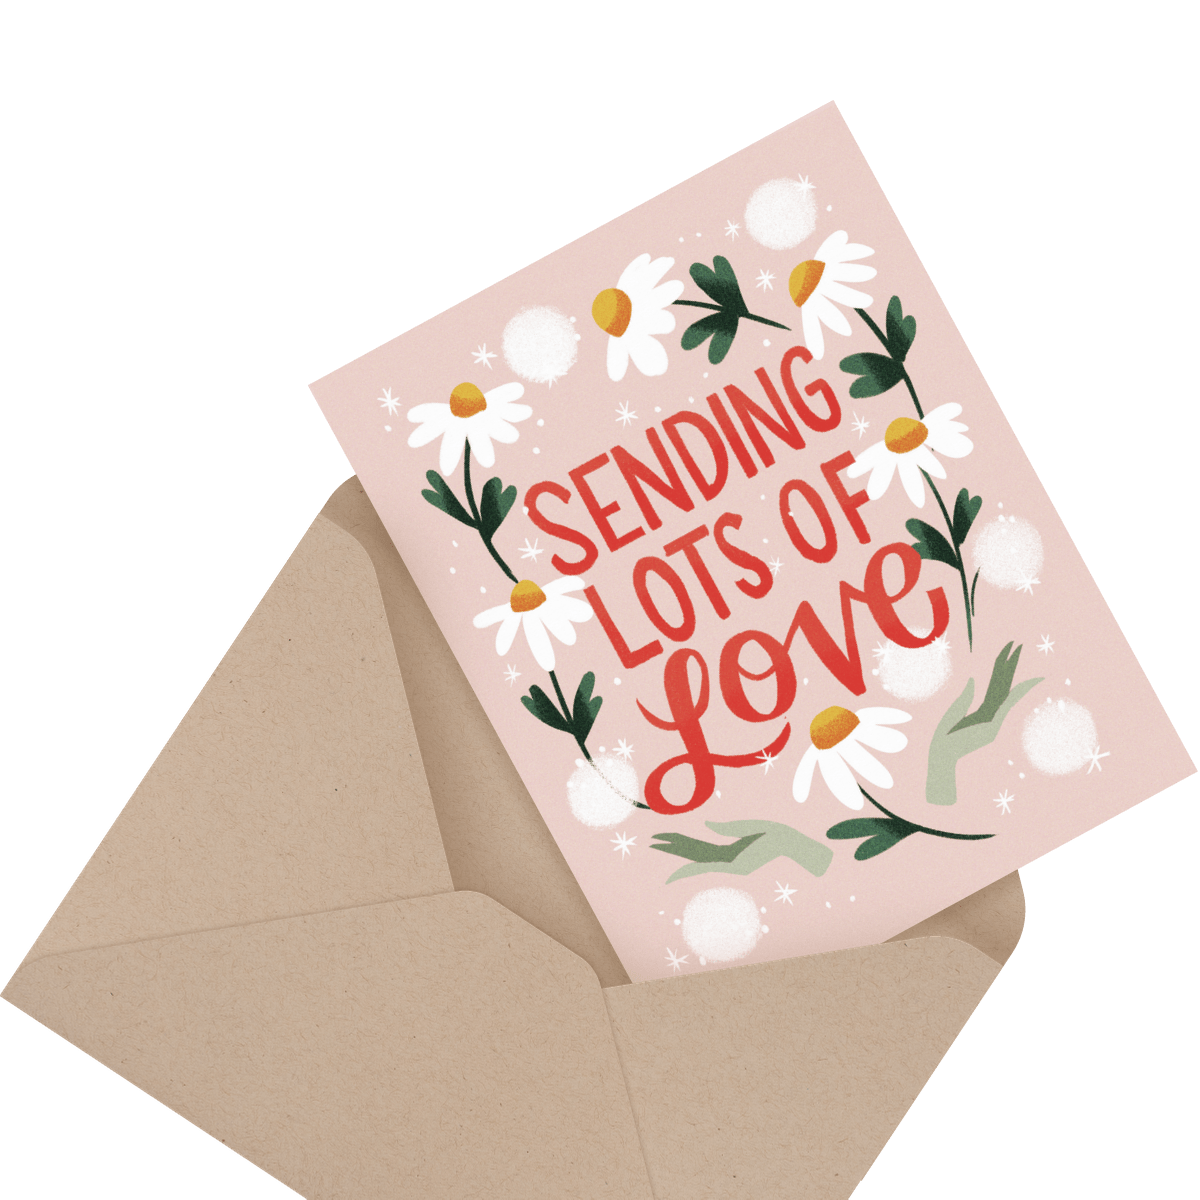 Sending lot's of love card